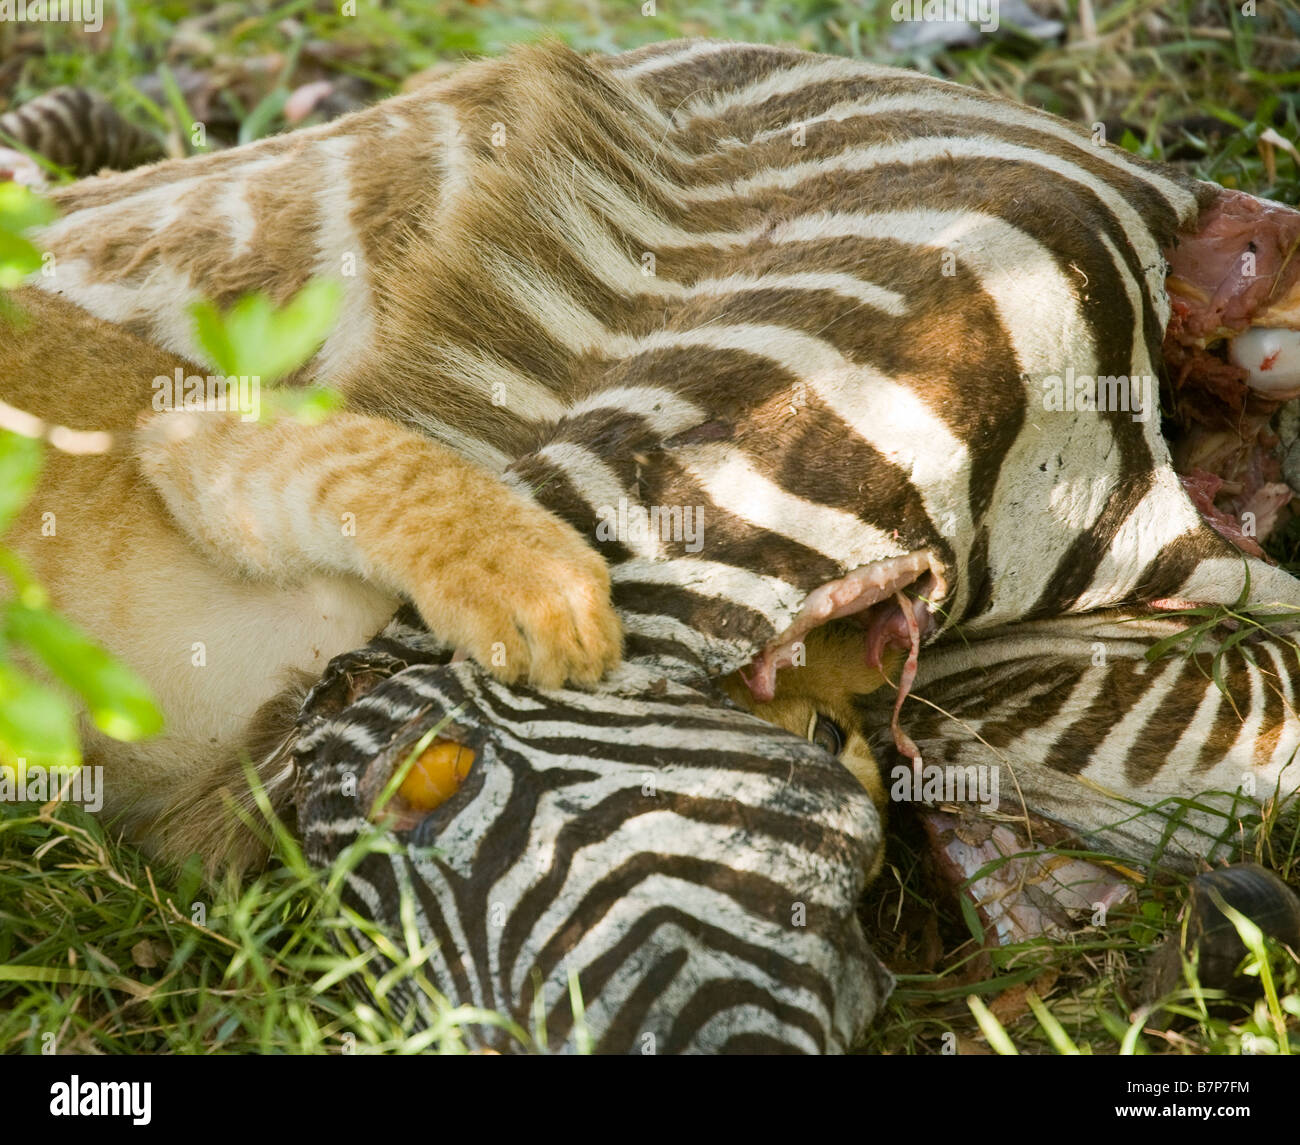 Lion cub Fütterung auf ein Zebra, dass ihre Mutter in der Masai Mara in Kenia ermordet hätte. Stockfoto